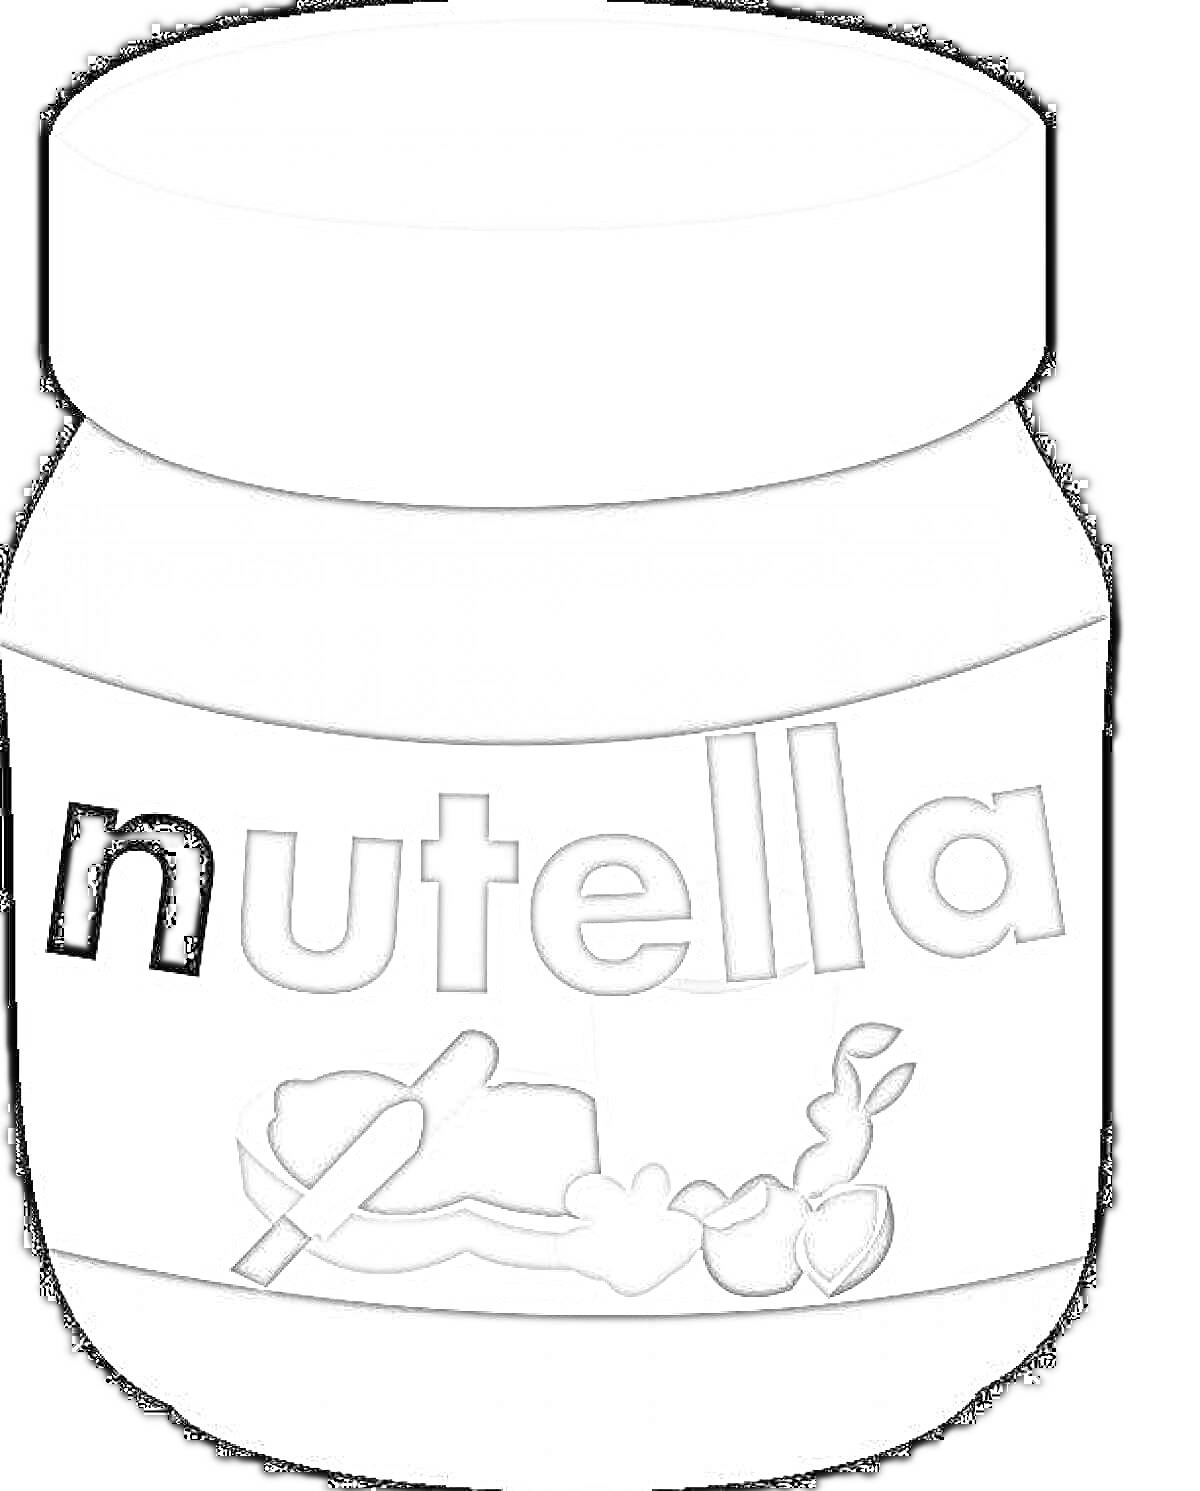 Банка Нутелла с логотипом и изображением хлеба с намазанной пастой и орехами на этикетке